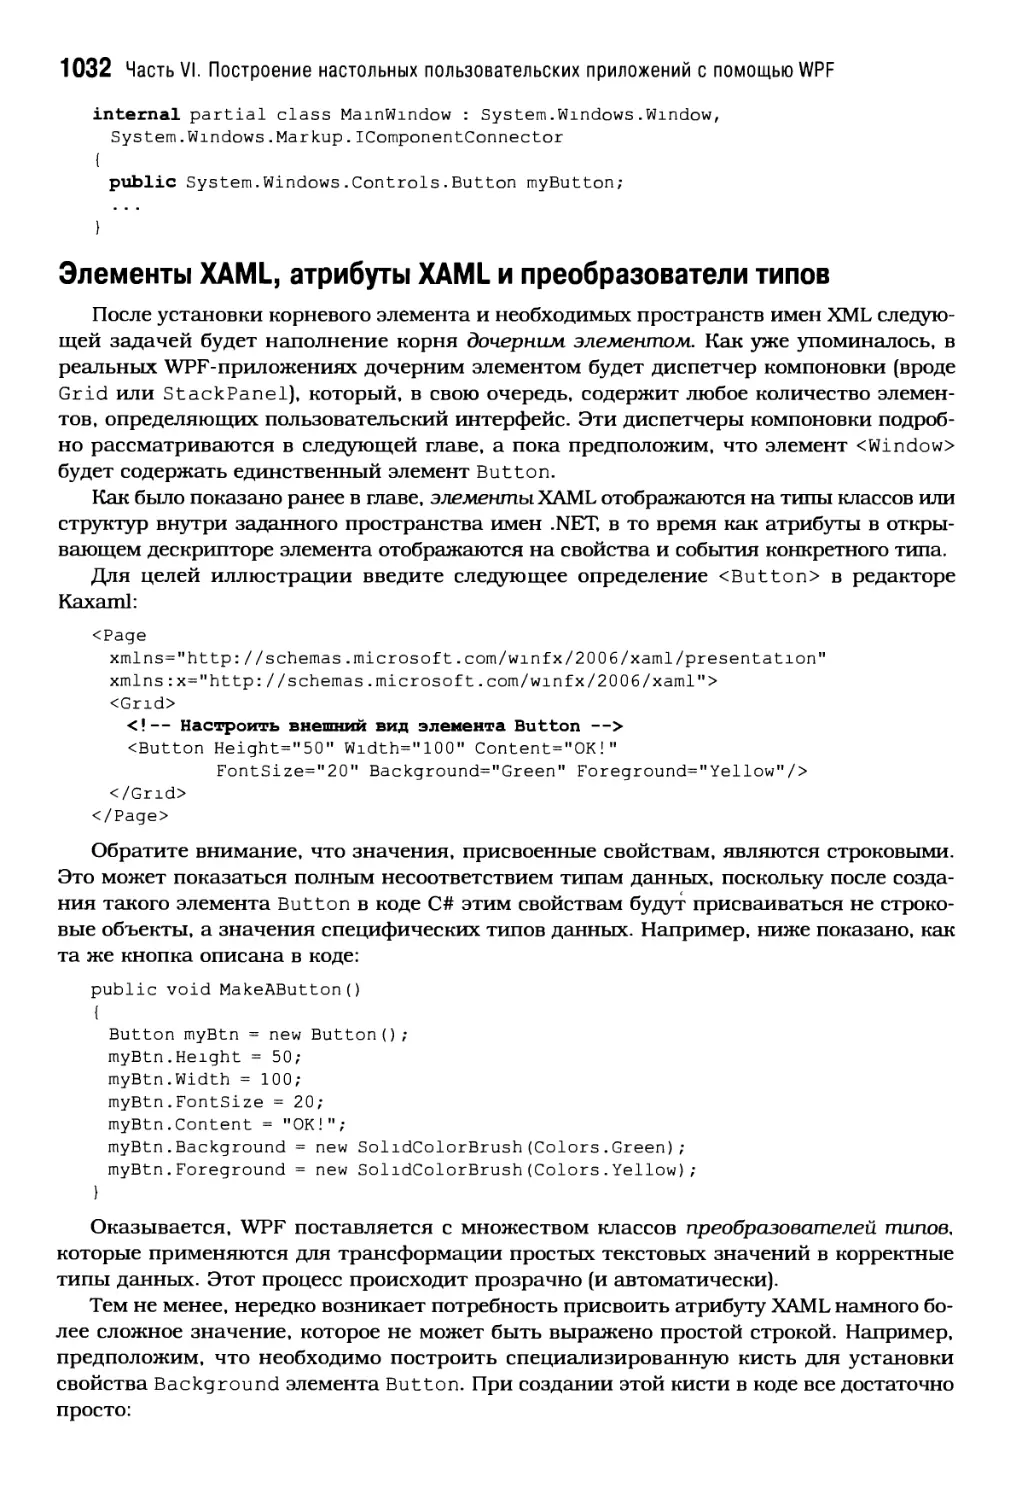 Элементы XAML, атрибуты XAML и преобразователи типов